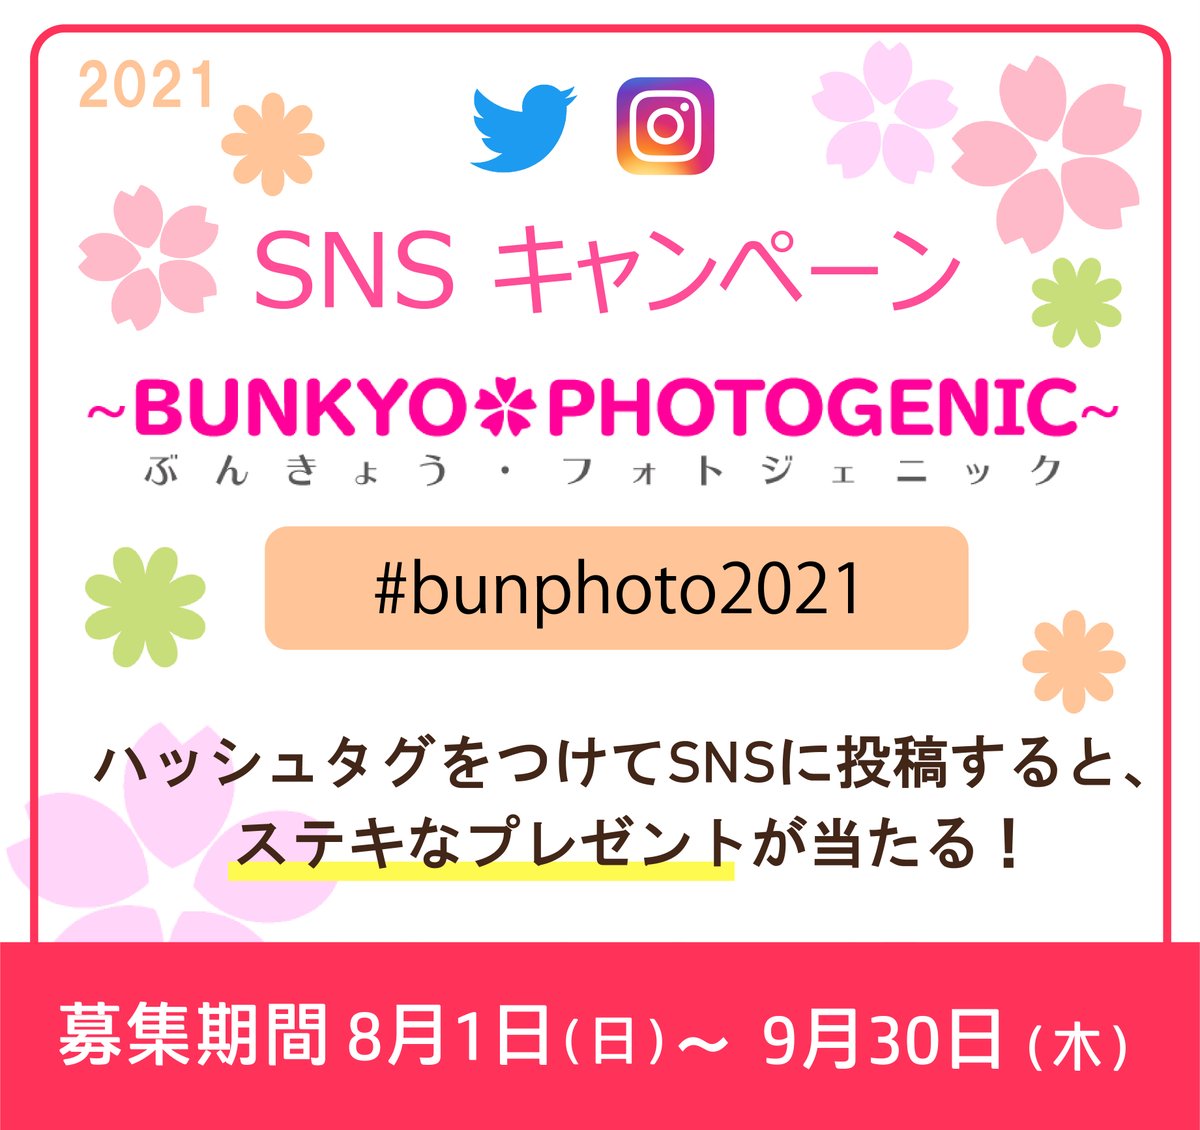 Bunkyo_Kanko tweet picture